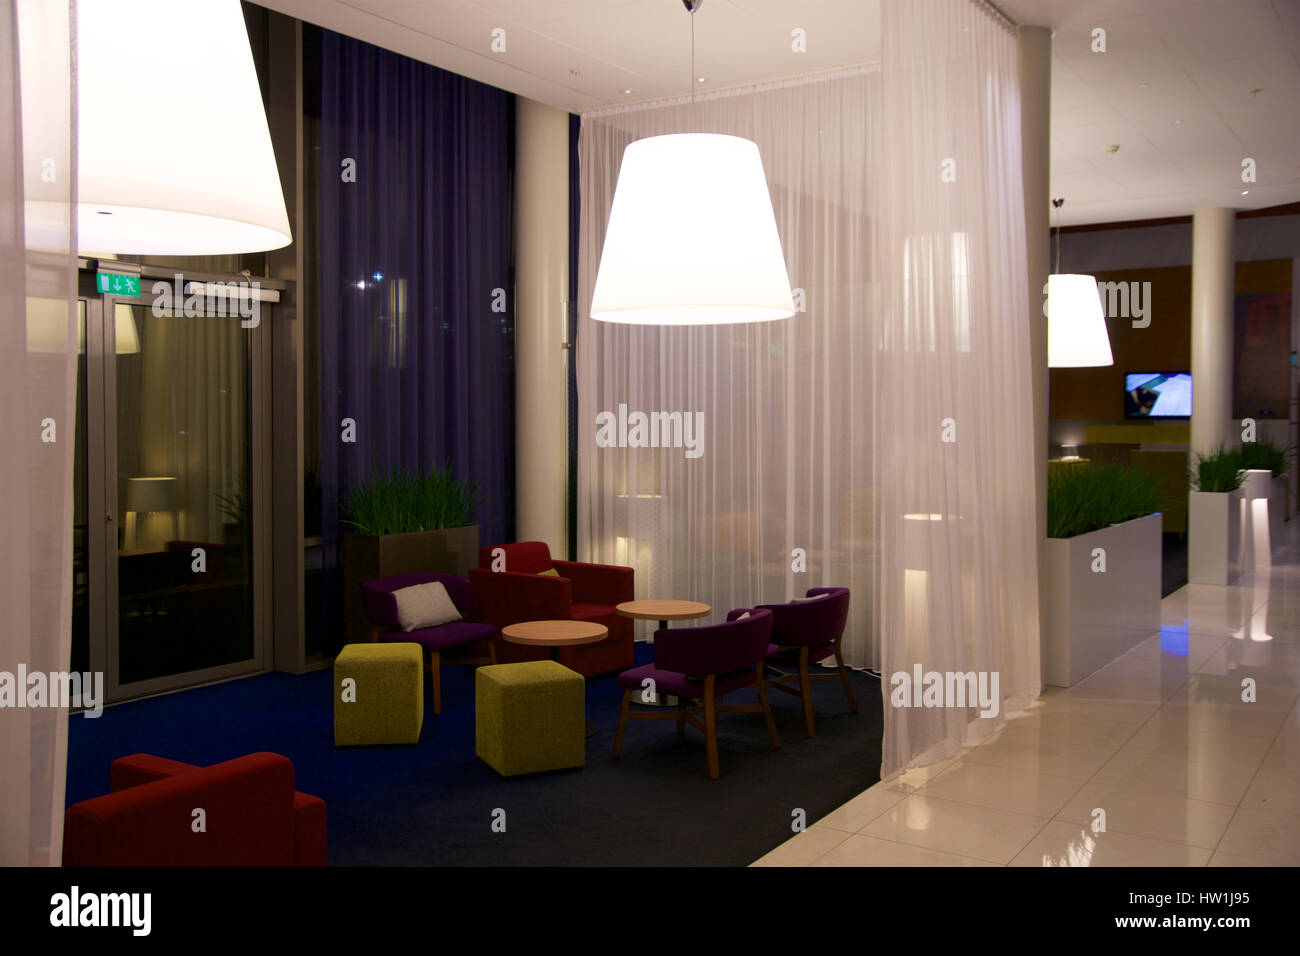 OSLO, Norwegen - 20. Januar 2017: Lounge-Bereich eines Hotels. Fragment der Lobby. Innenarchitektur, Flughafenhotel Park Inn. Stockfoto